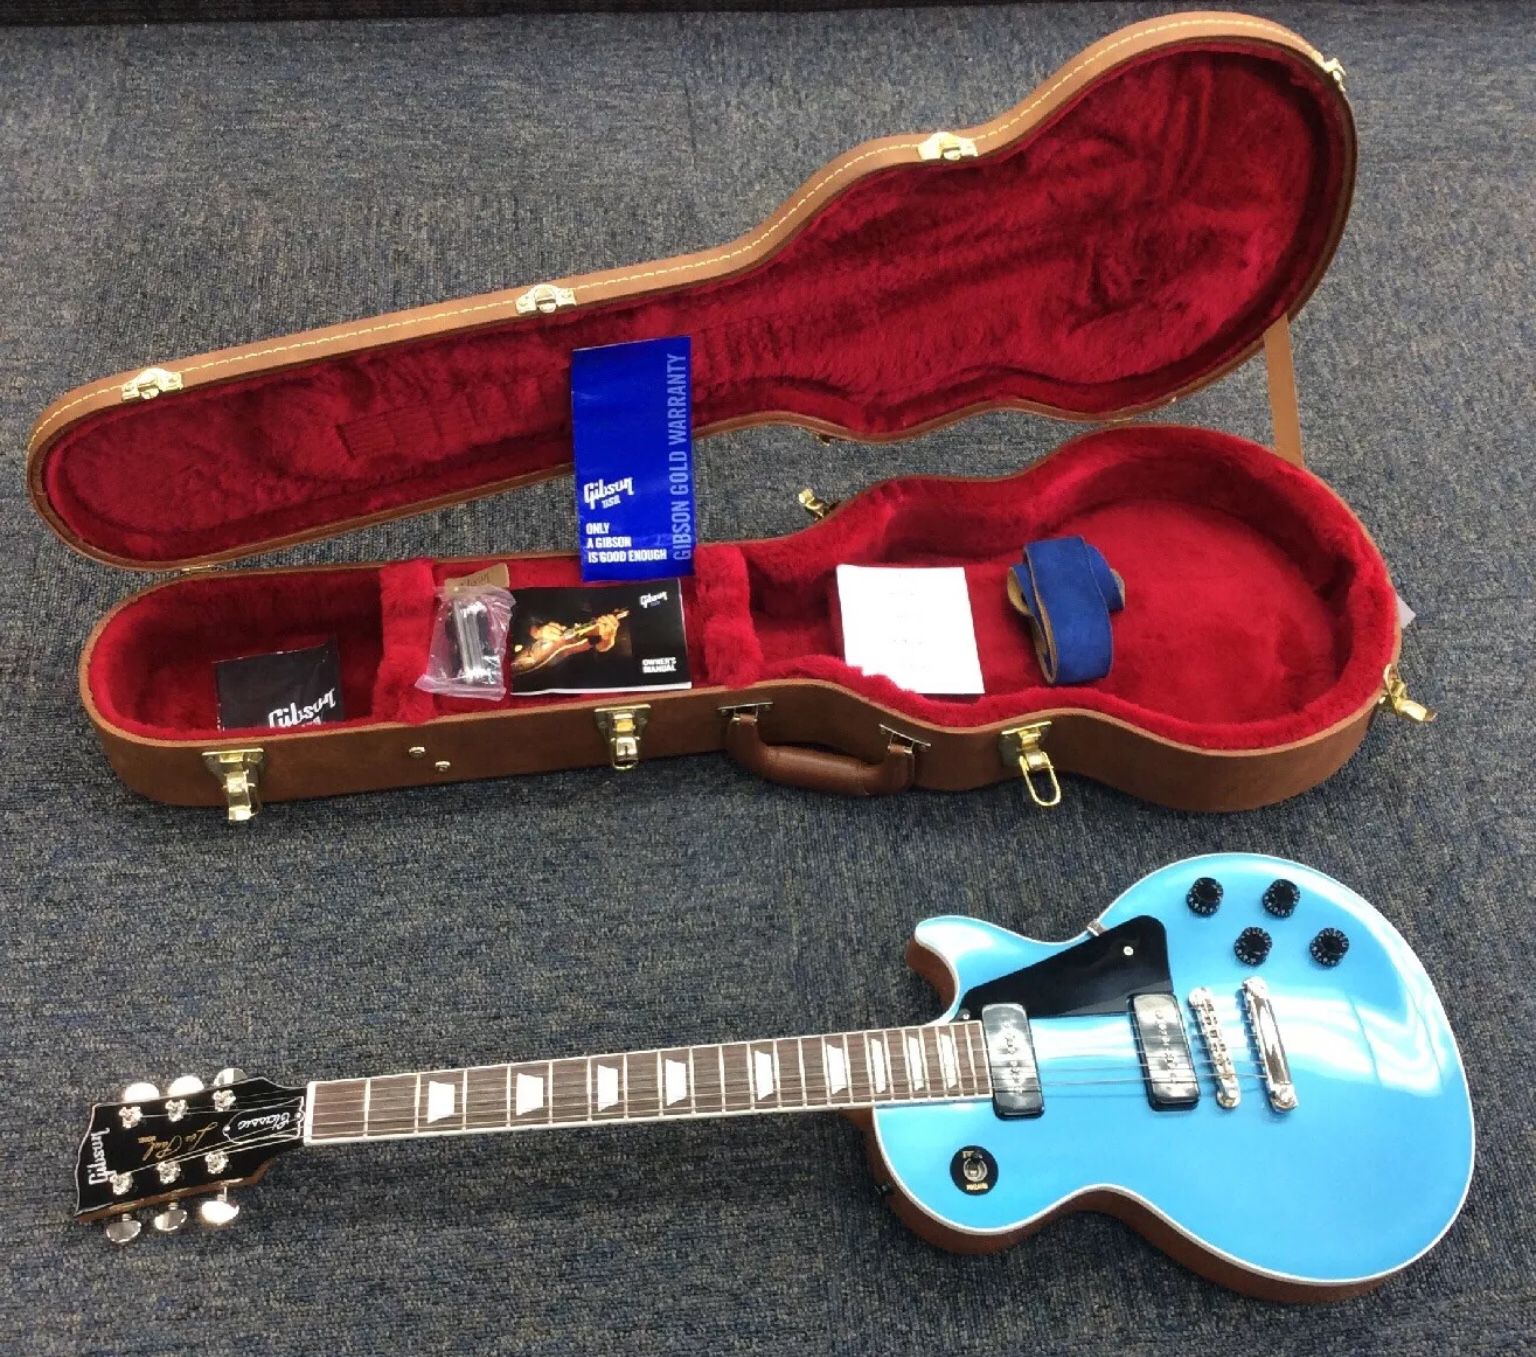 Gibson Les Paul Classic Electric Guitar Pelham Blue USA Made 2018 Model